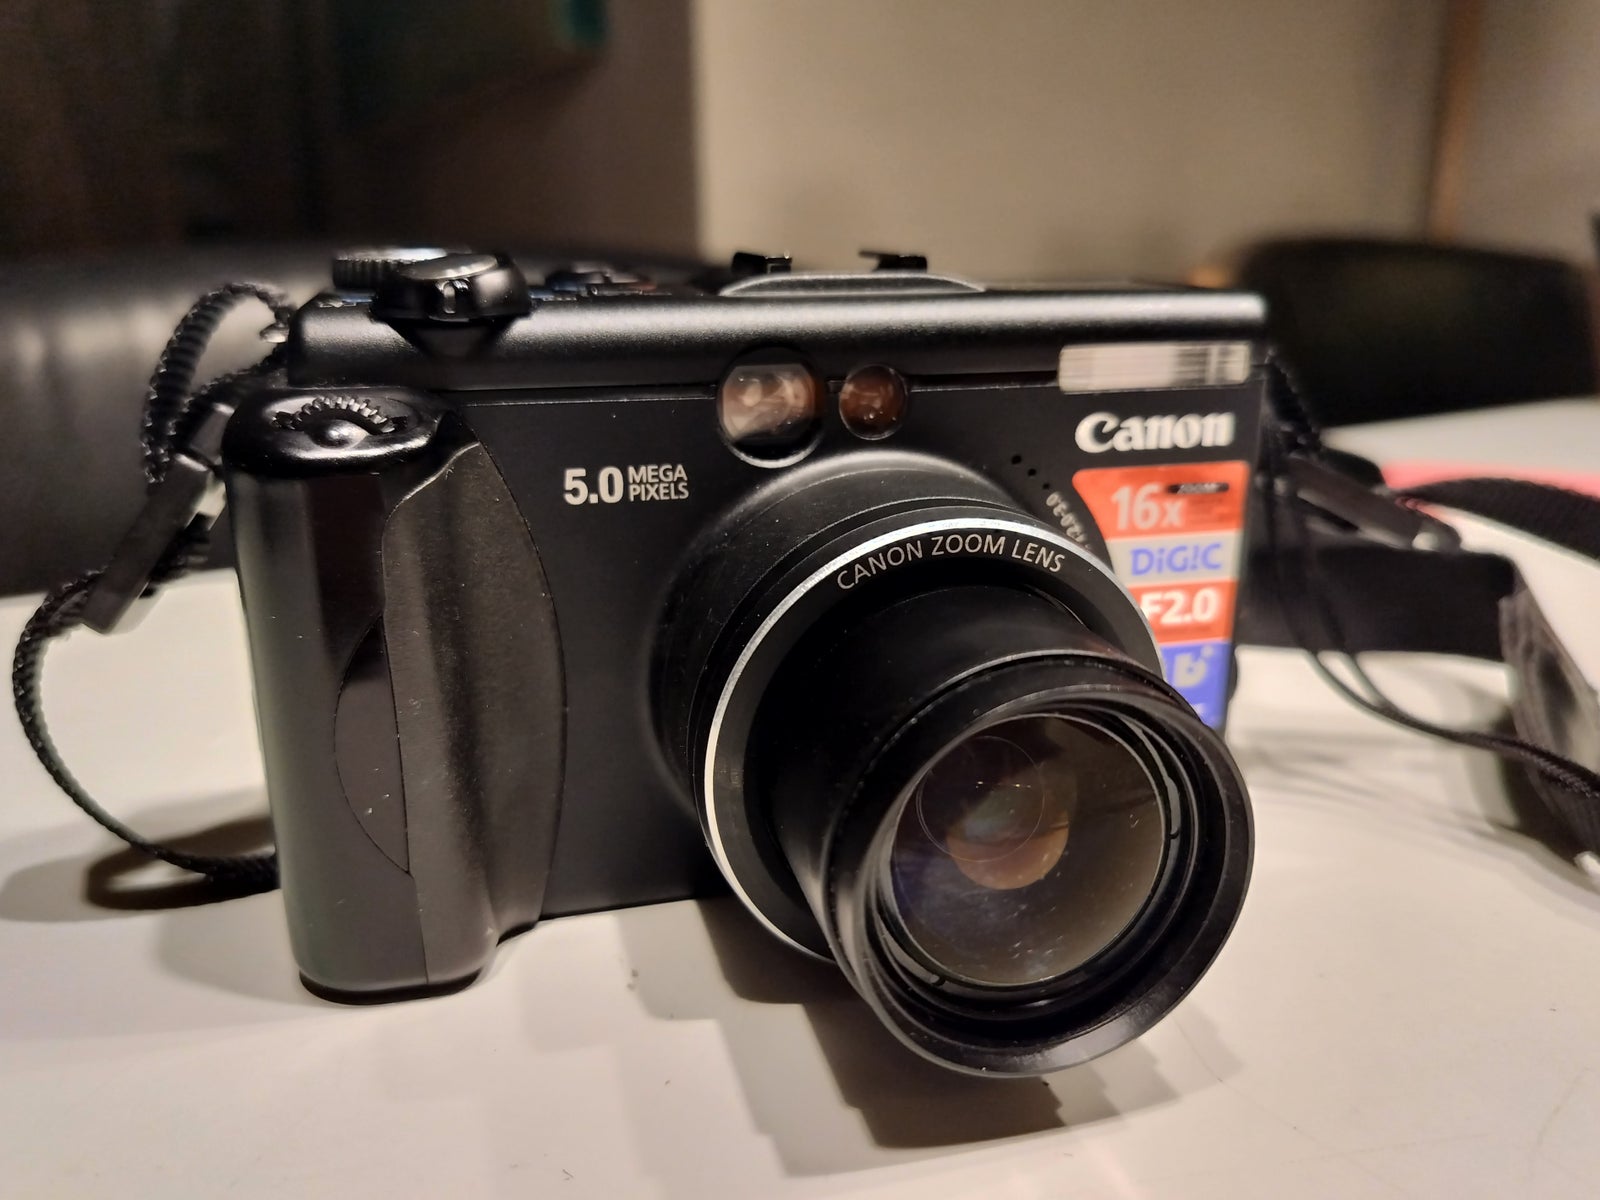 Canon, G5 (PowerShot), 5.0 megapixels